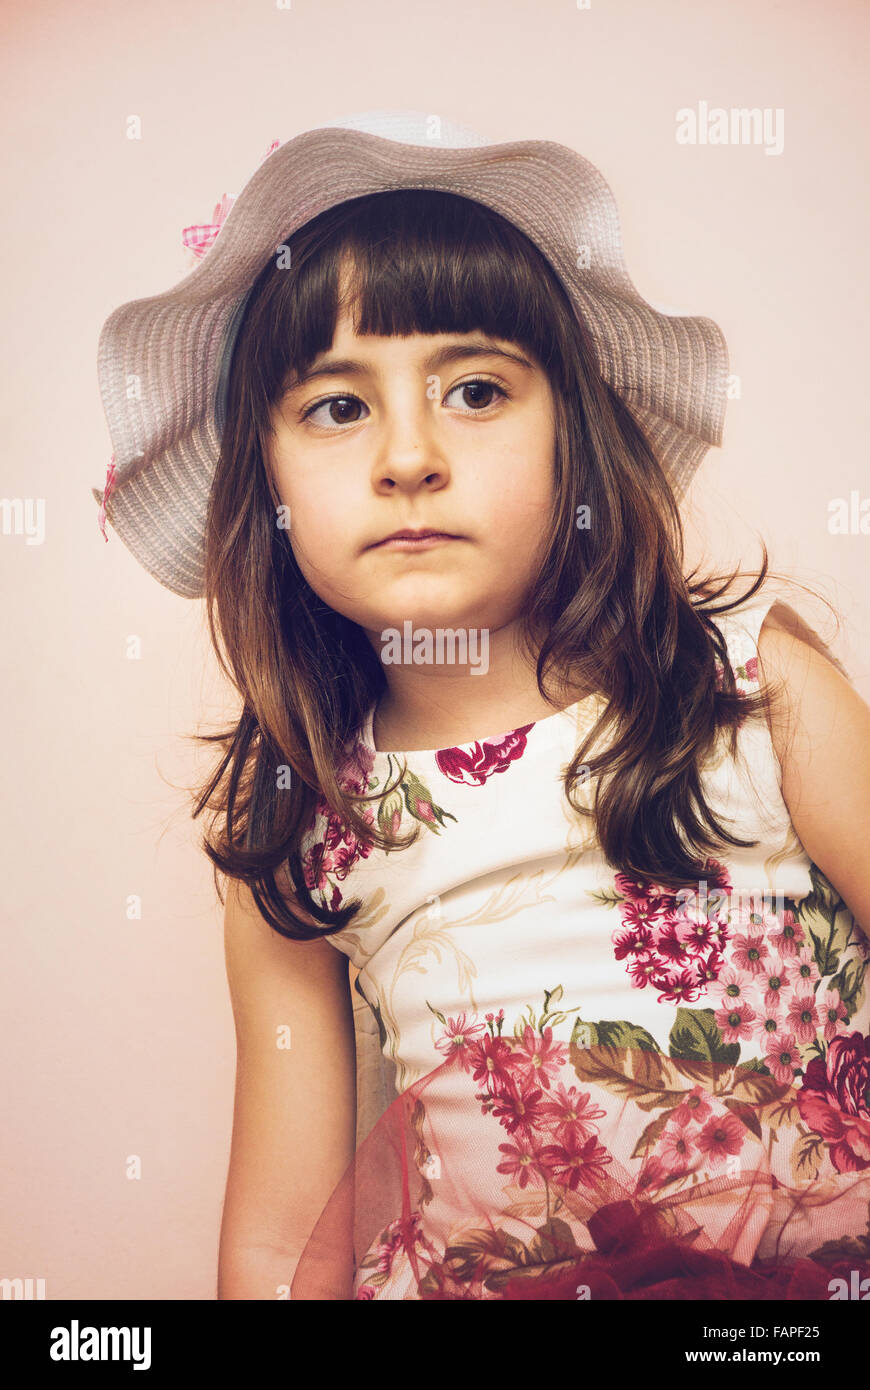 Nettes Kind Mädchen Porträt in sanften Tönen Stockfoto